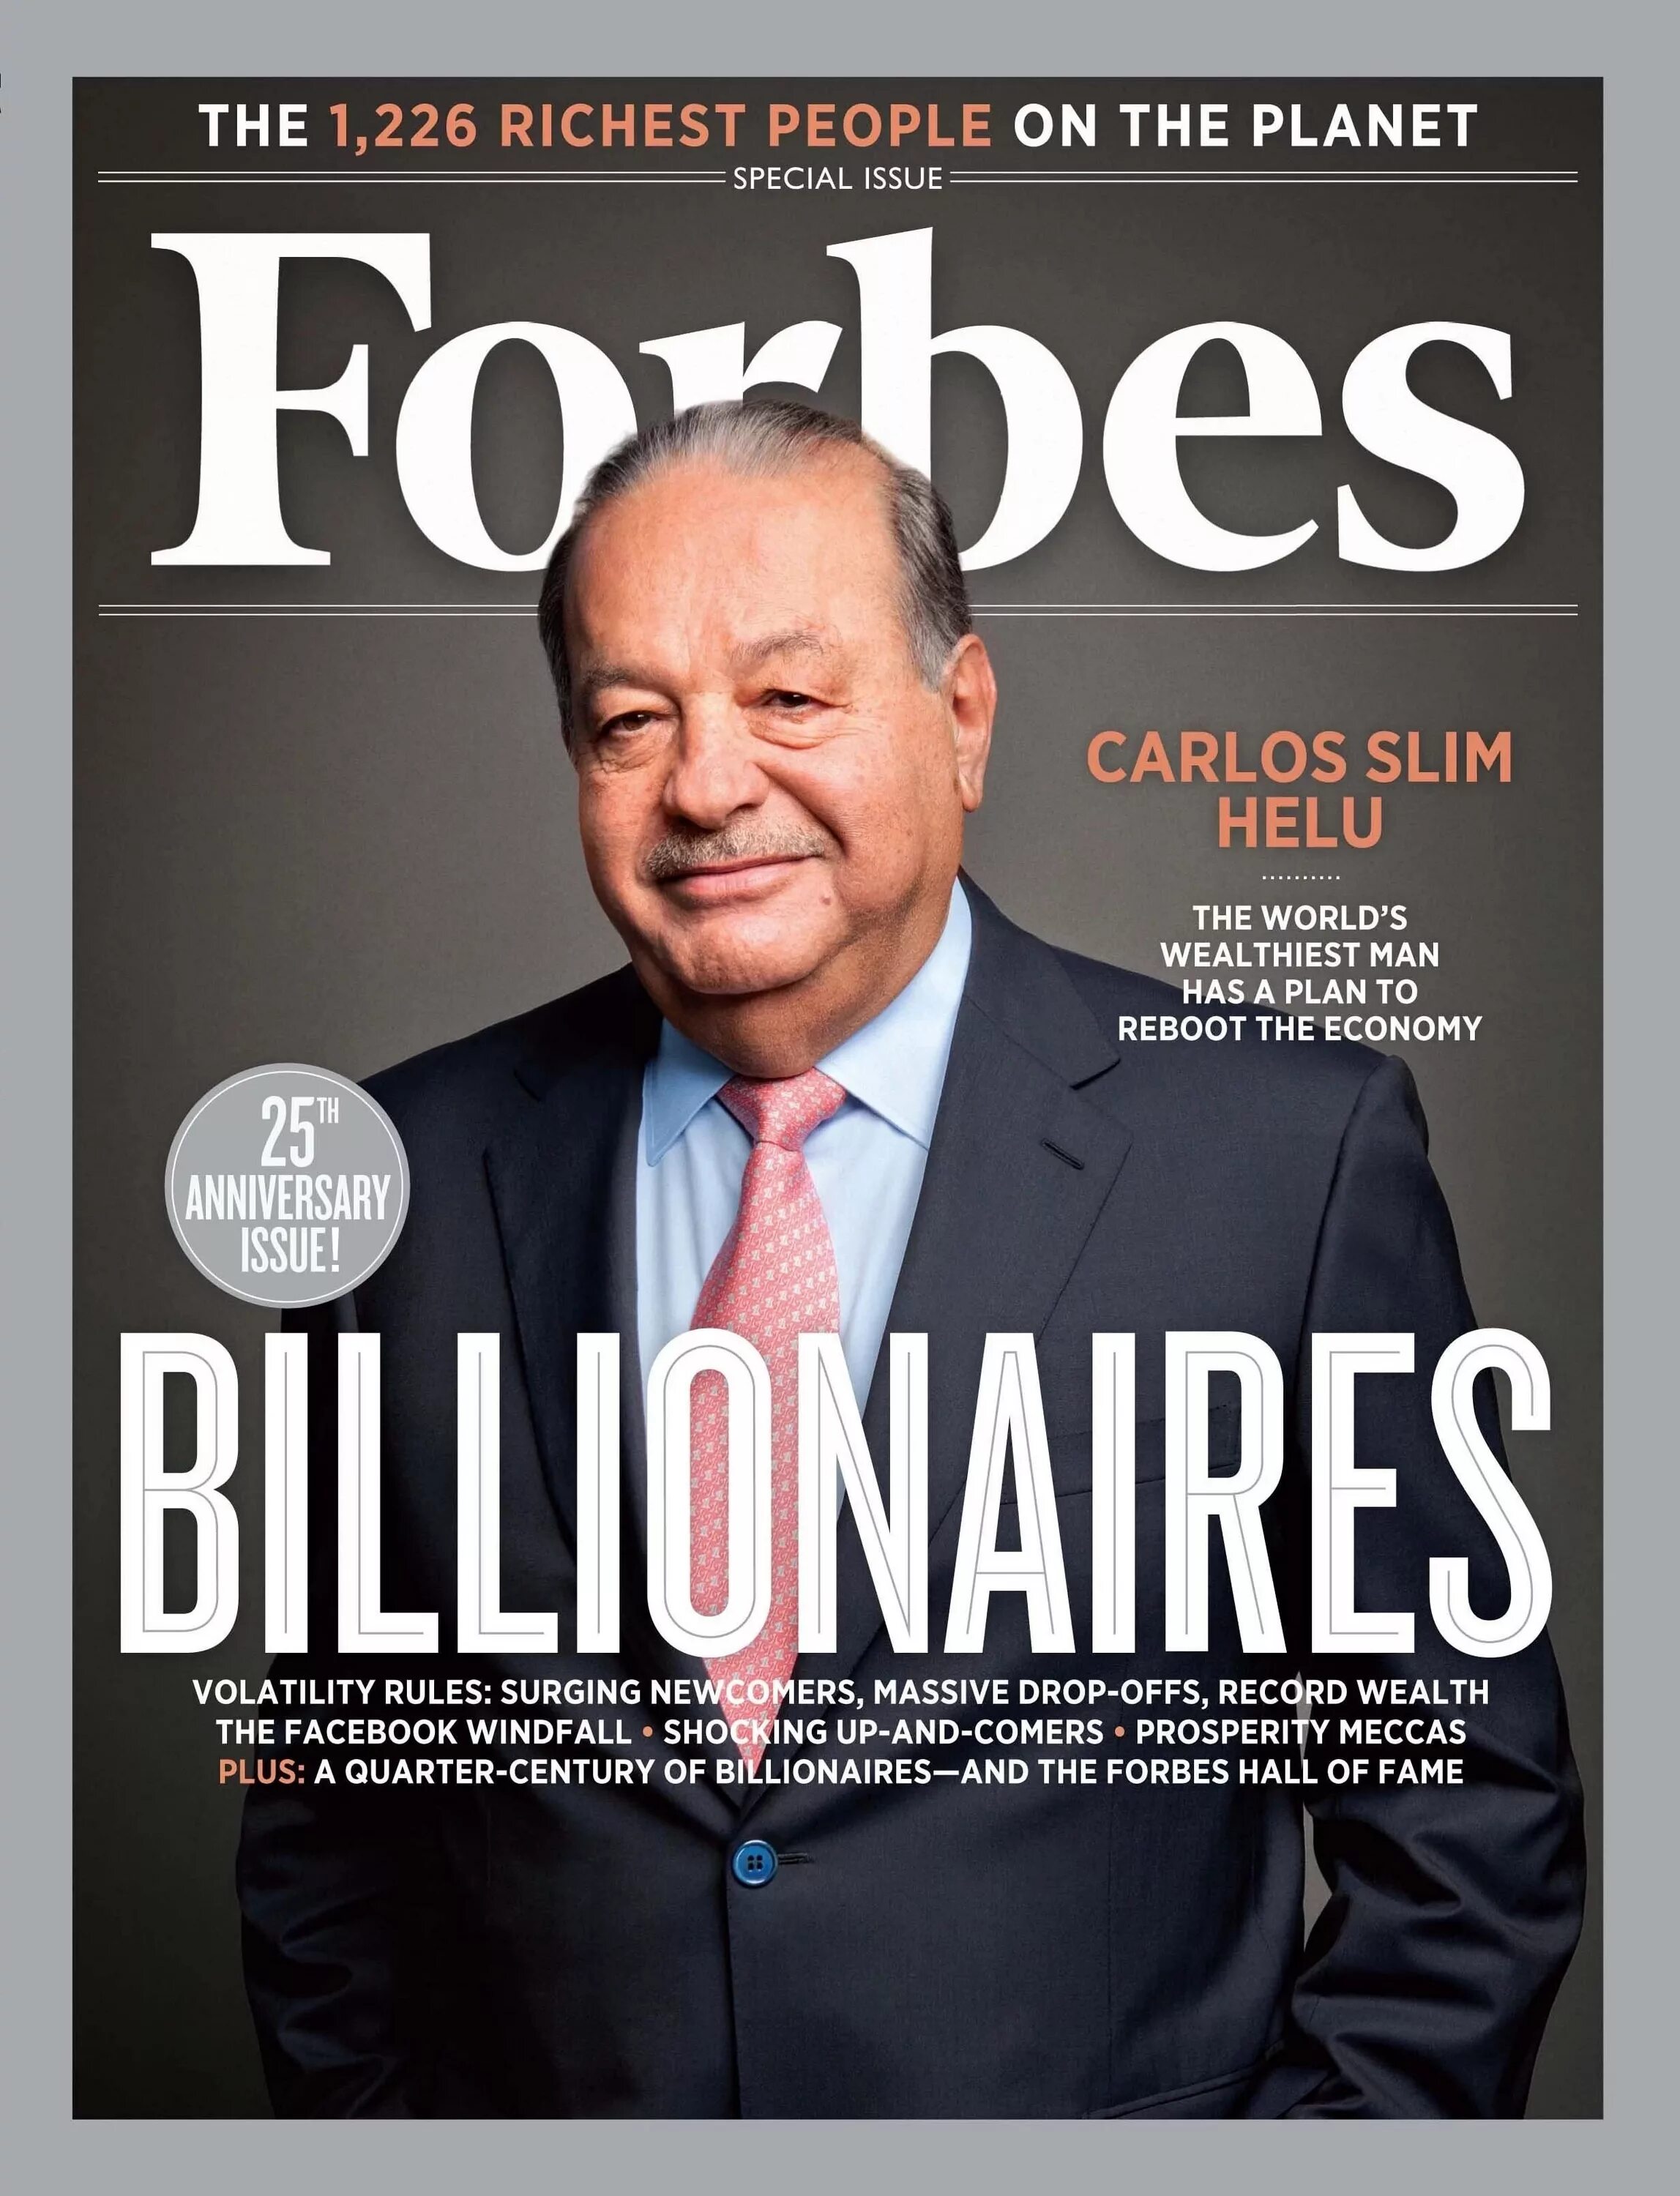 Первый журнал в мире. Карлос слим миллиардер. Миллиардеры обложка форбс. Самый богатый человек в мире журнал форбс 2021.